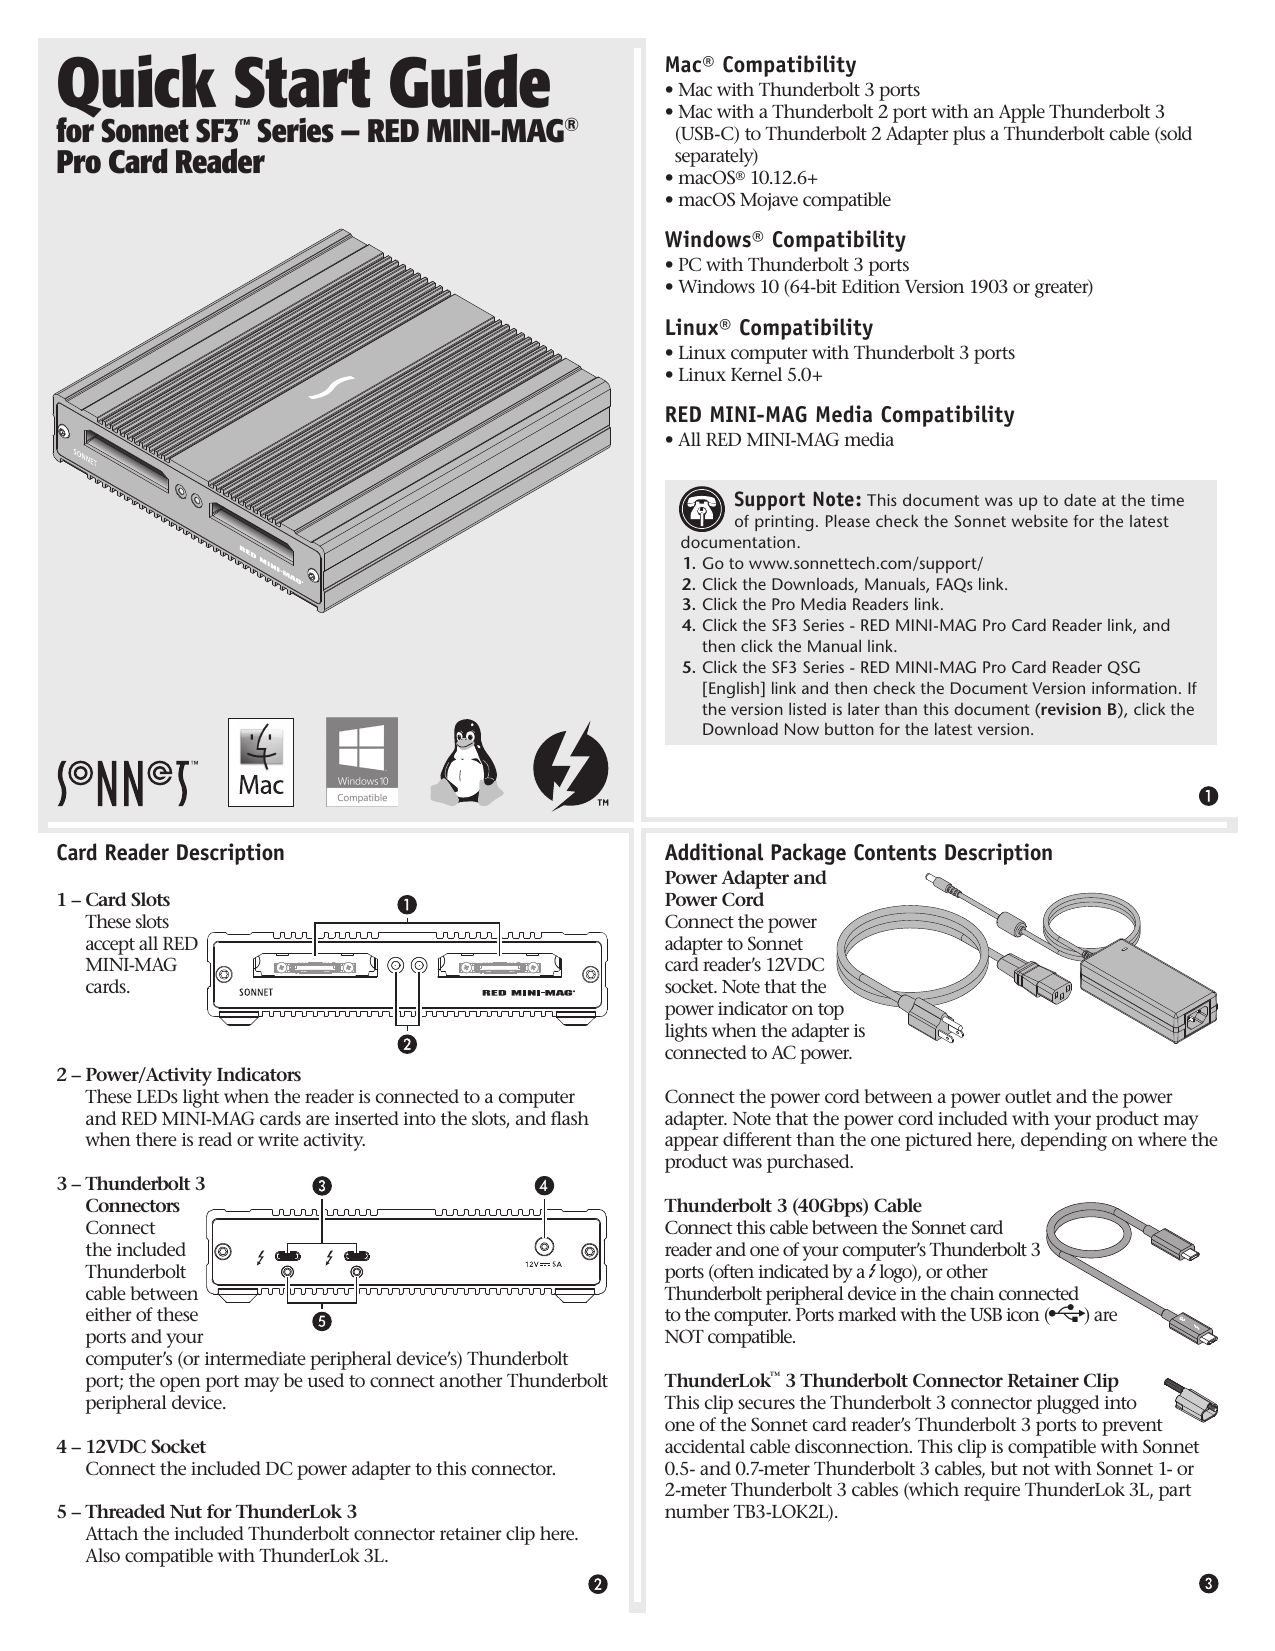 thunderbolt p2 card reader manual